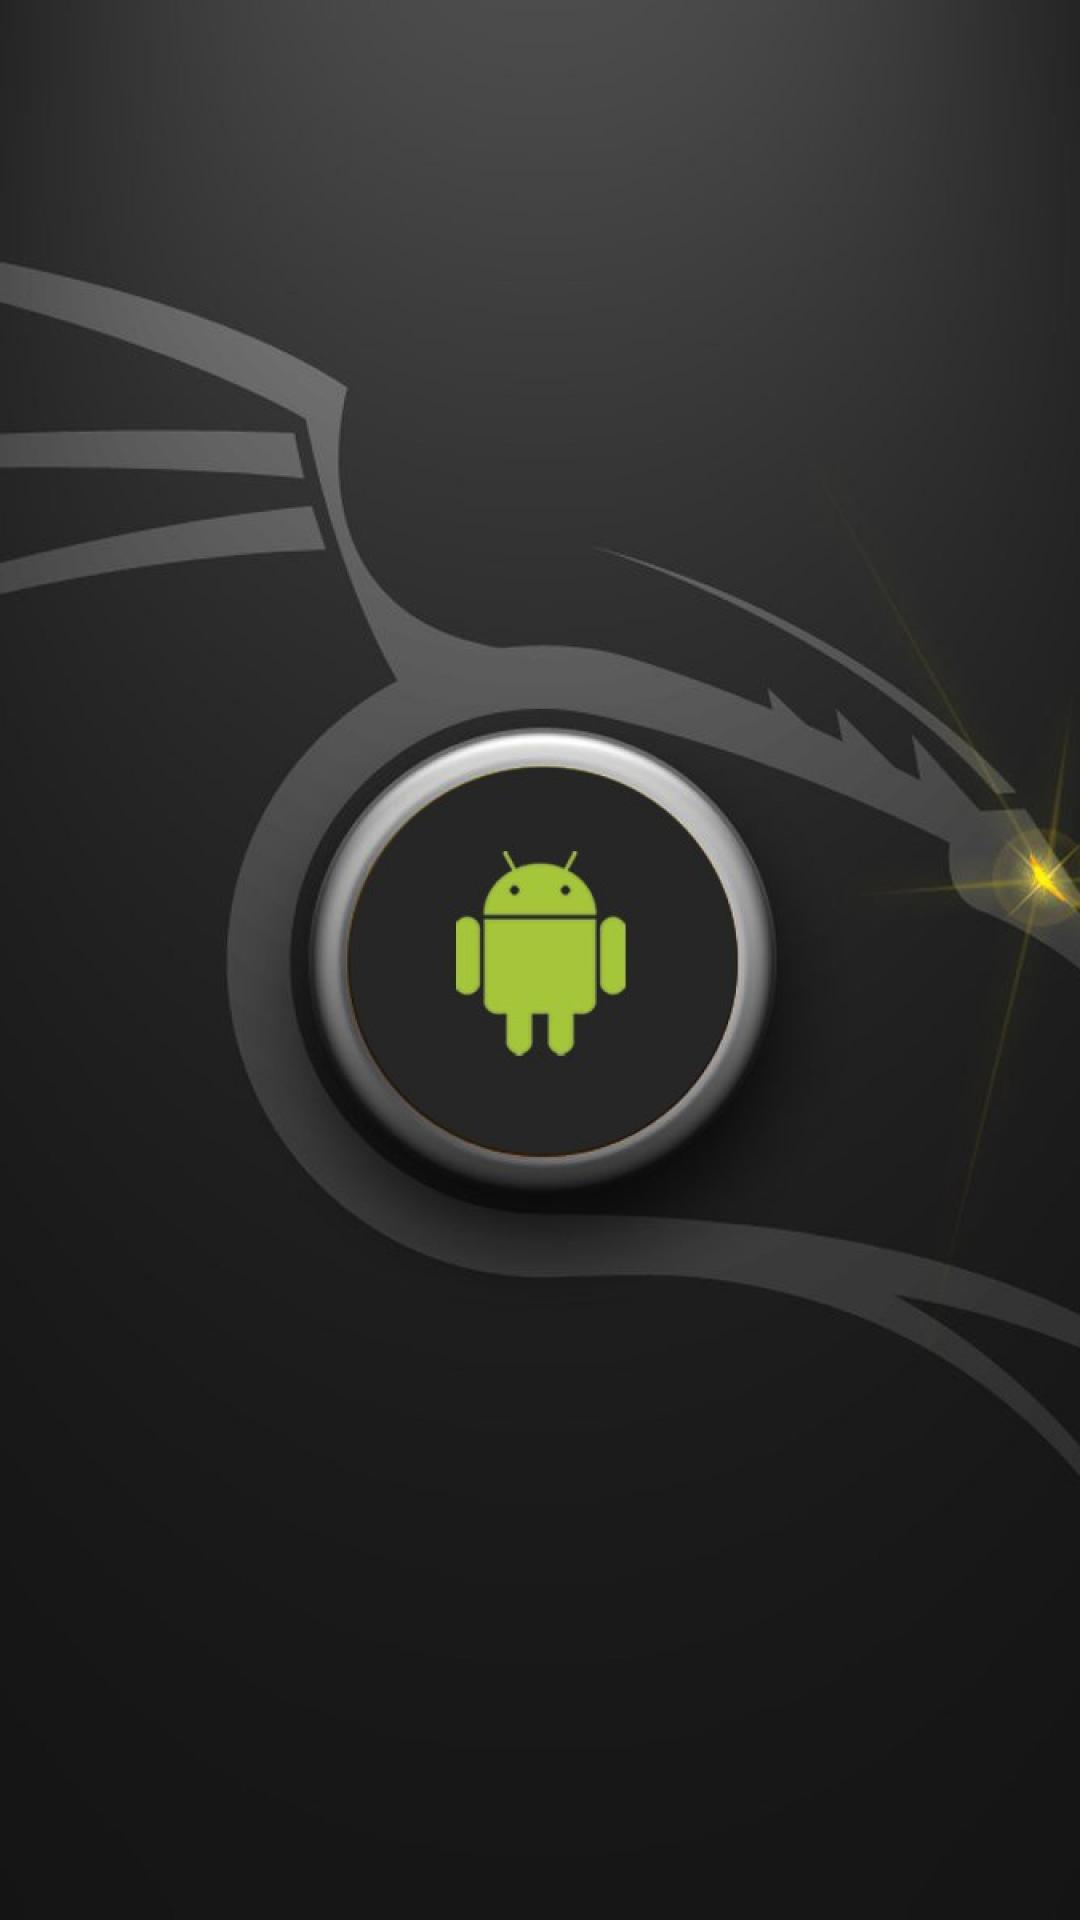 fond d'écran pour mobile android,vert,jaune,police de caractère,équipement audio,la technologie